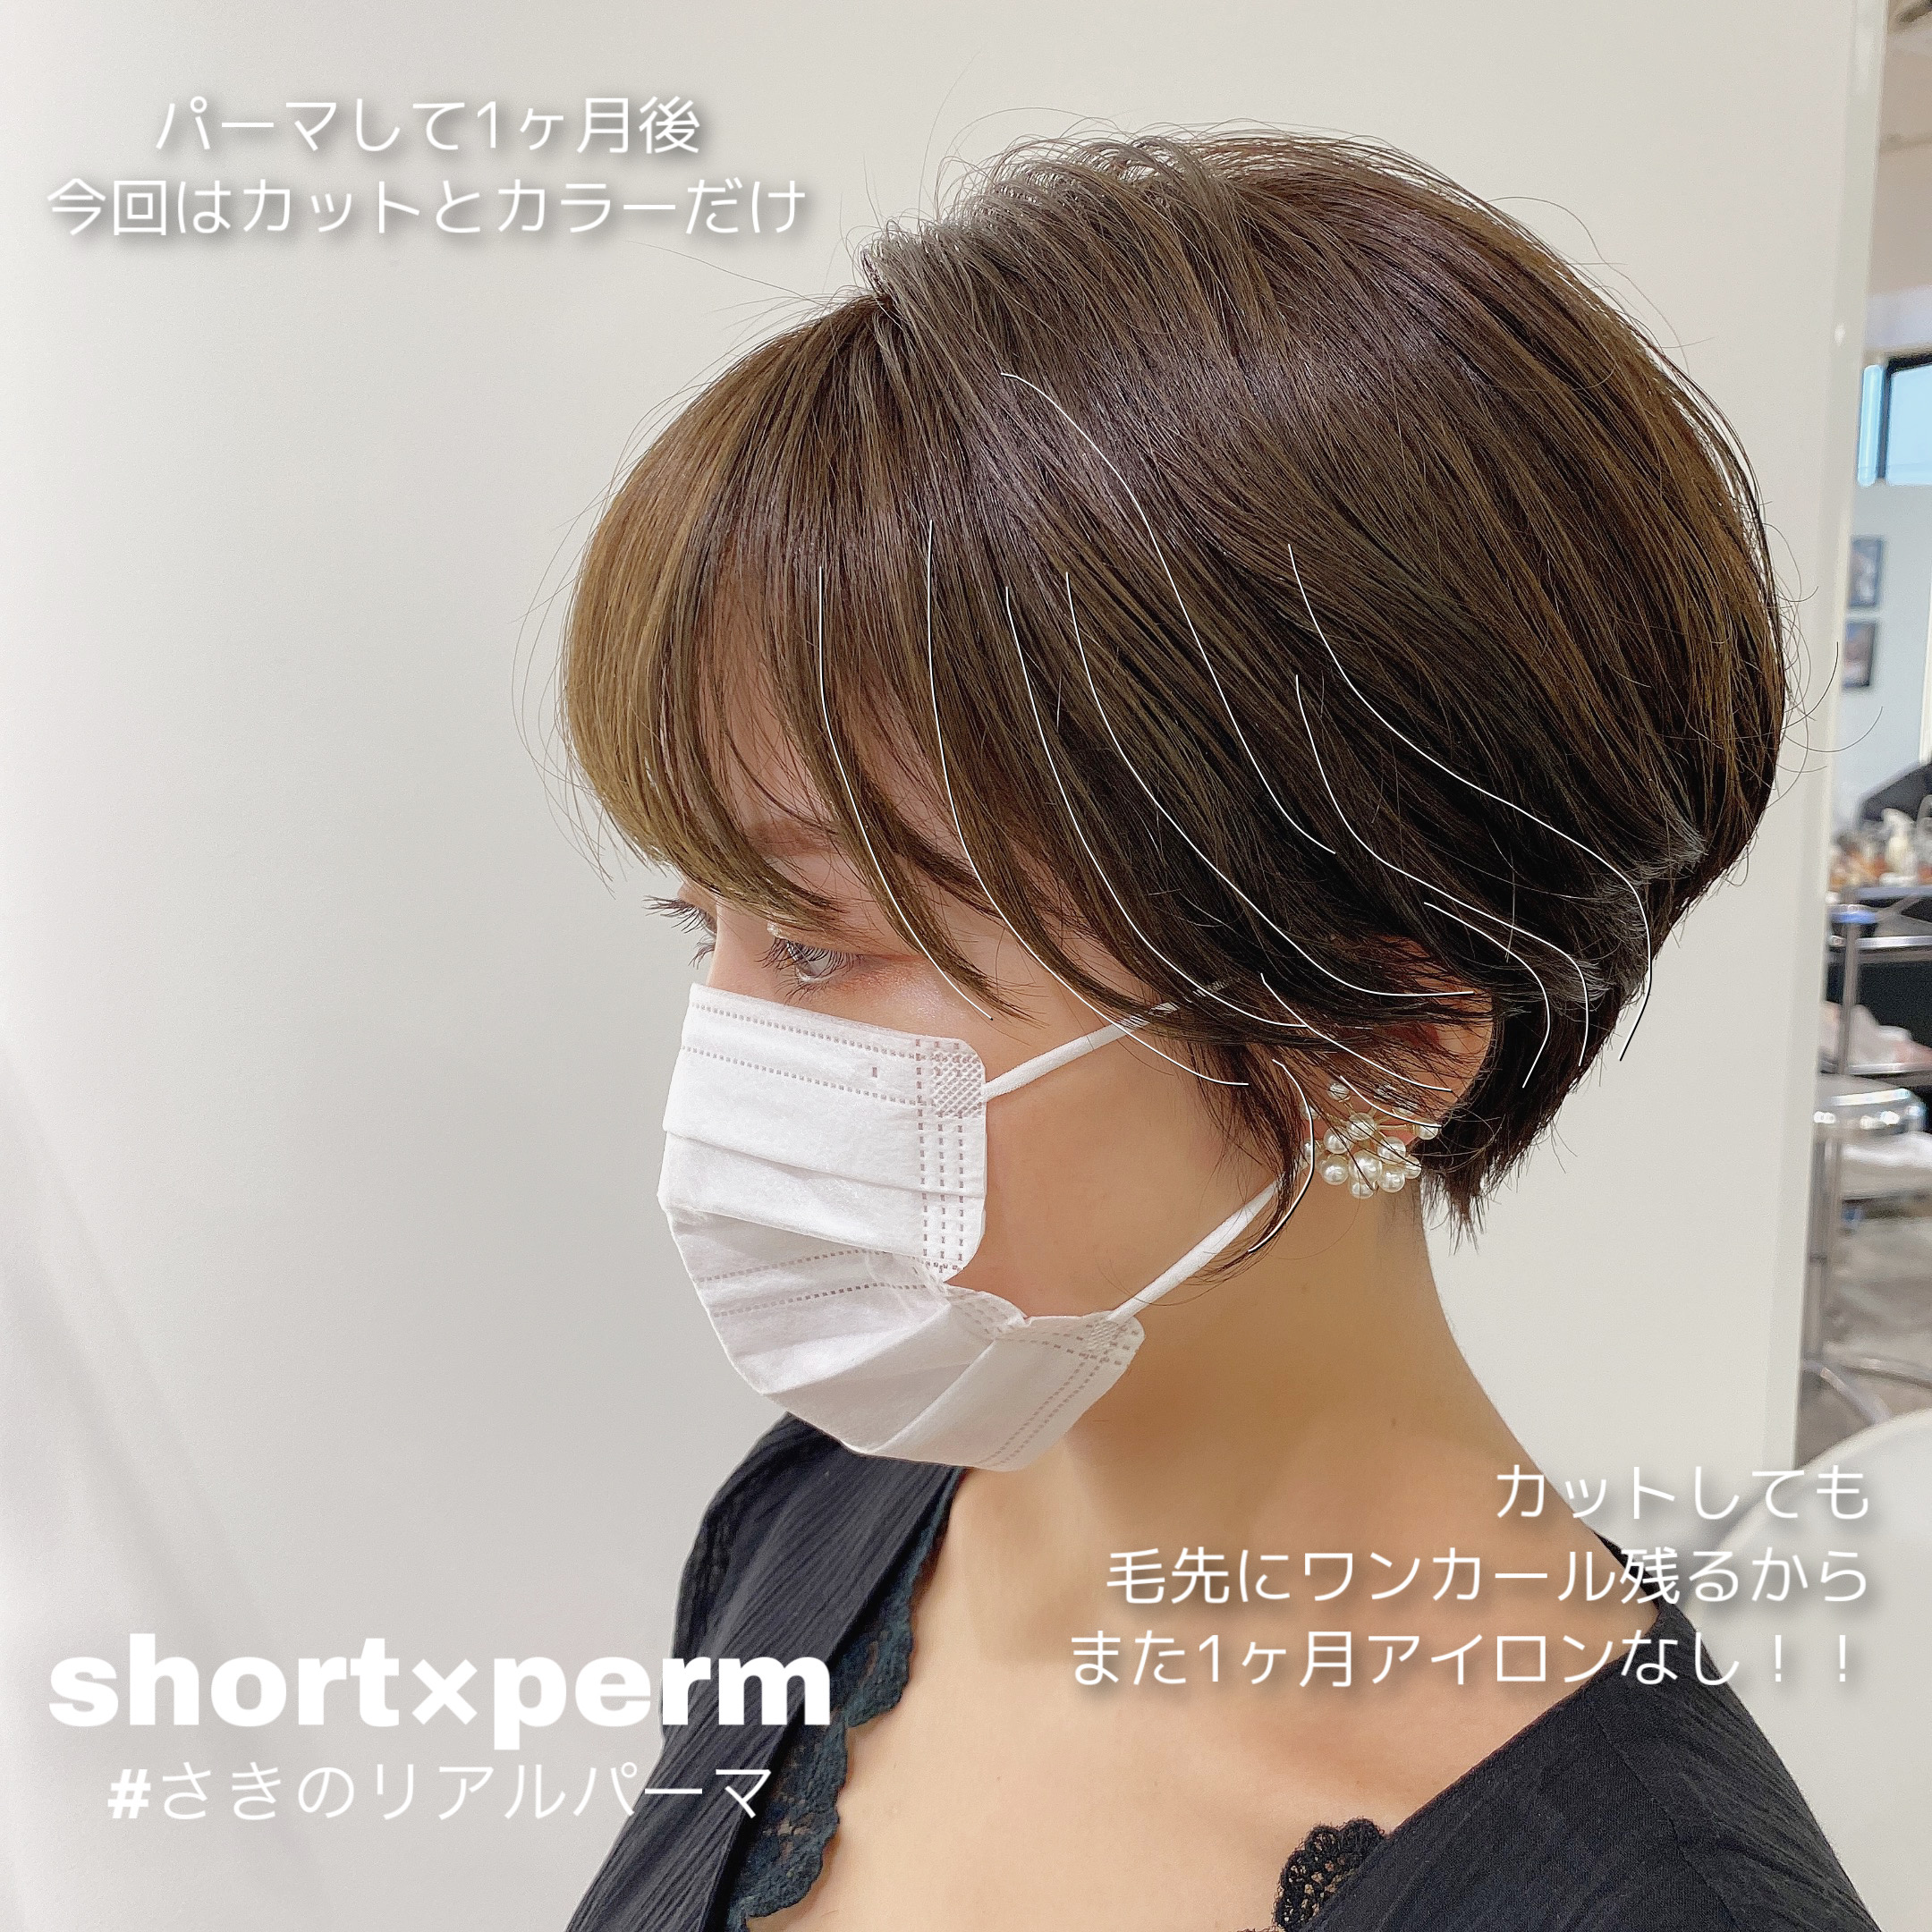 さきのリアルパーマ ひと月後は 新宿サウス店サロンニュース Mod S Hair オフィシャルサイト ヘアサロン 美容室 美容院